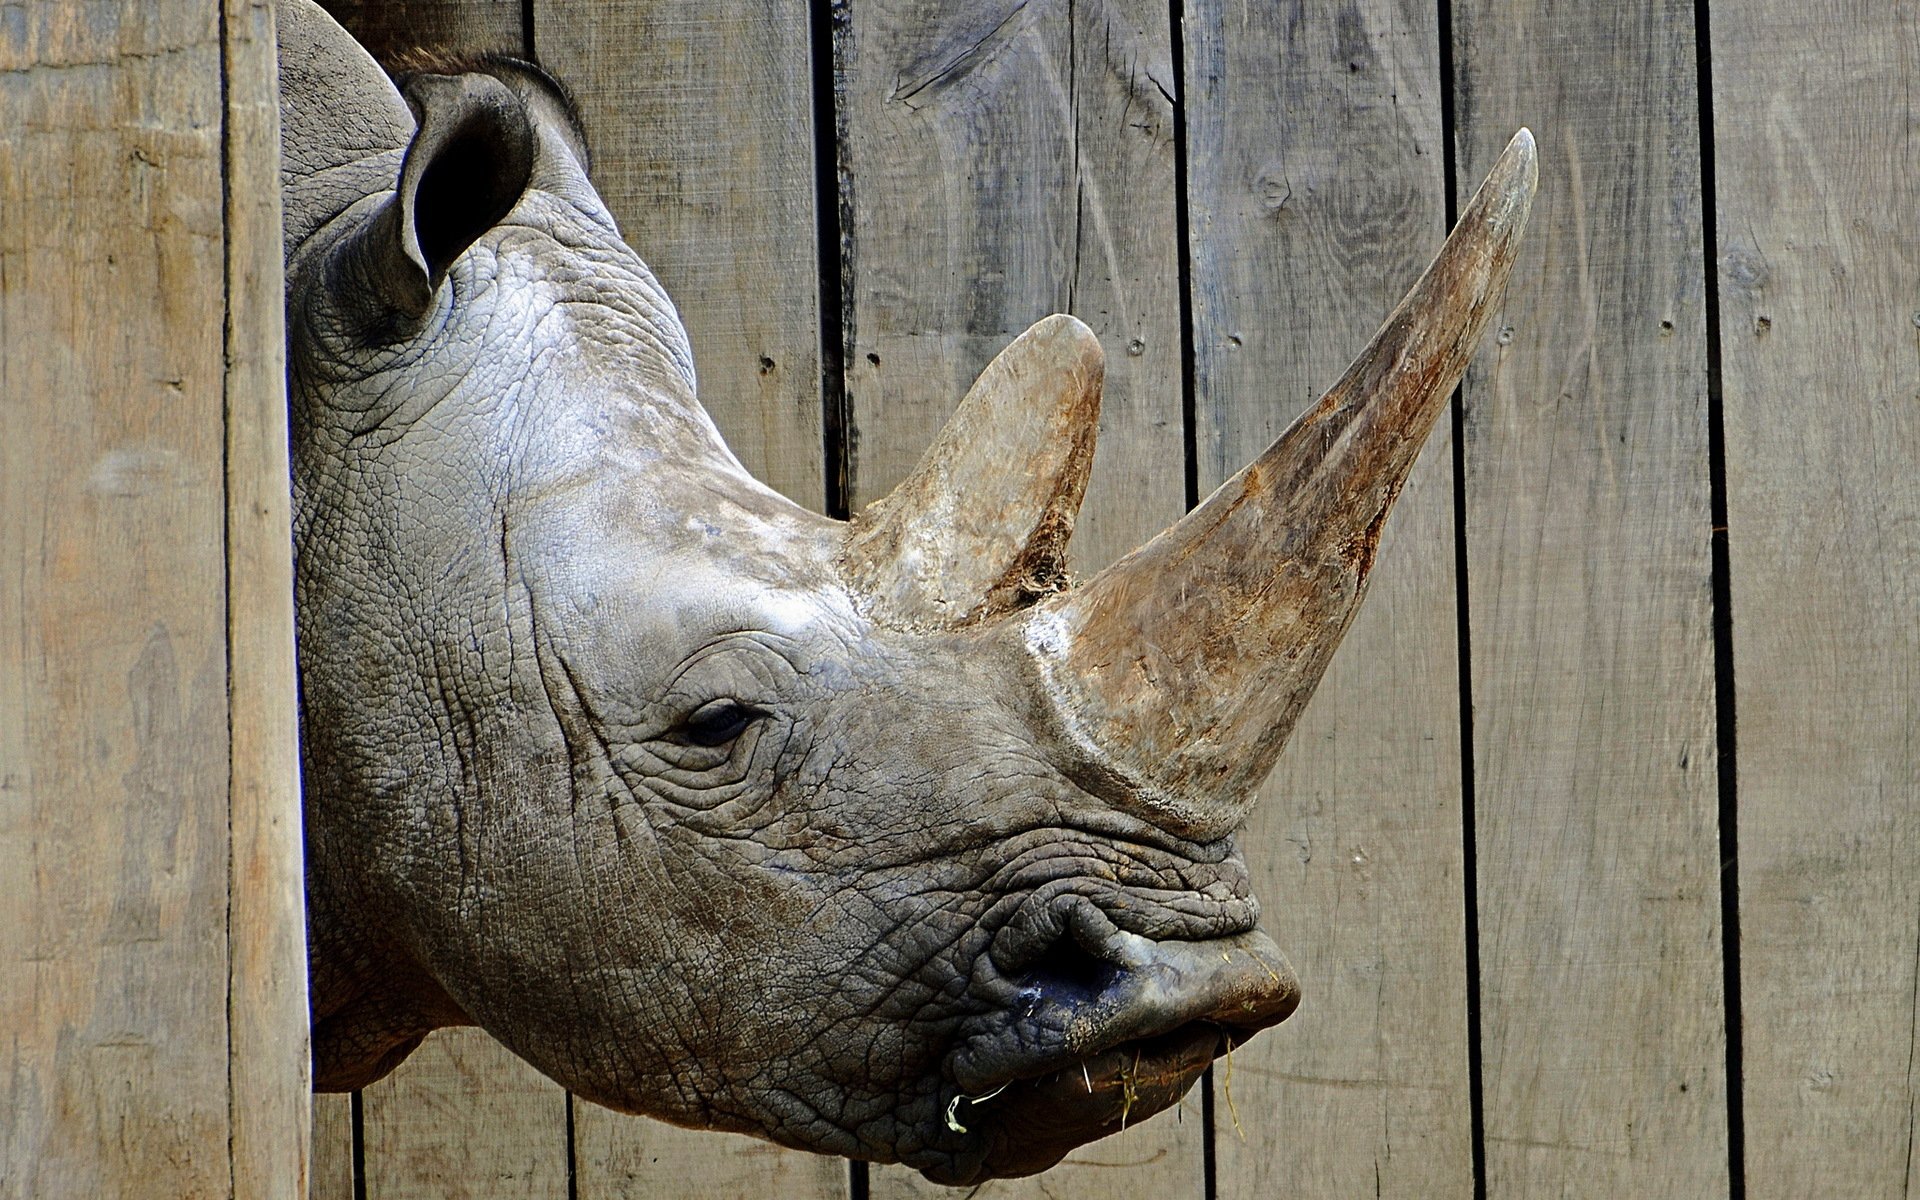 rhinoceros 4 versus rhinoceros 5